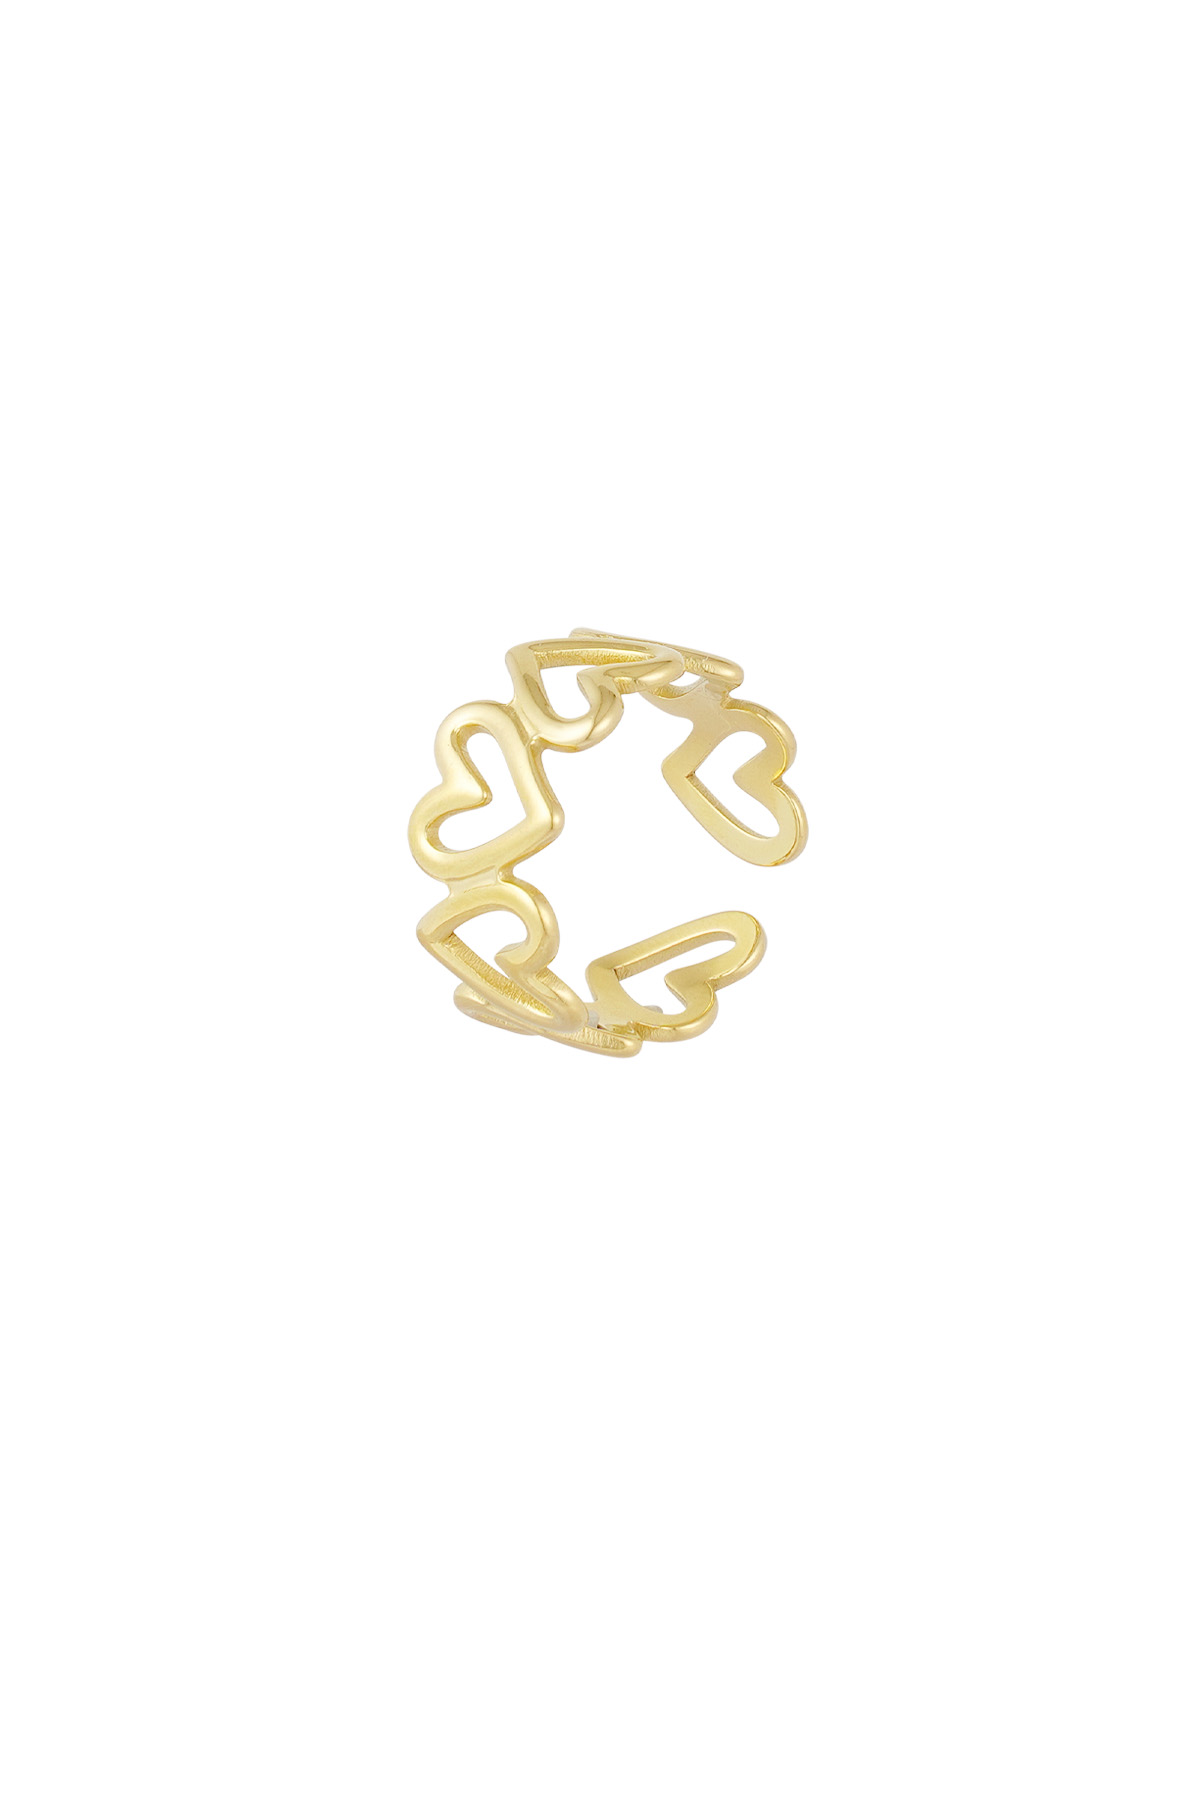 Bükülmüş aşk yüzüğü - altın h5 